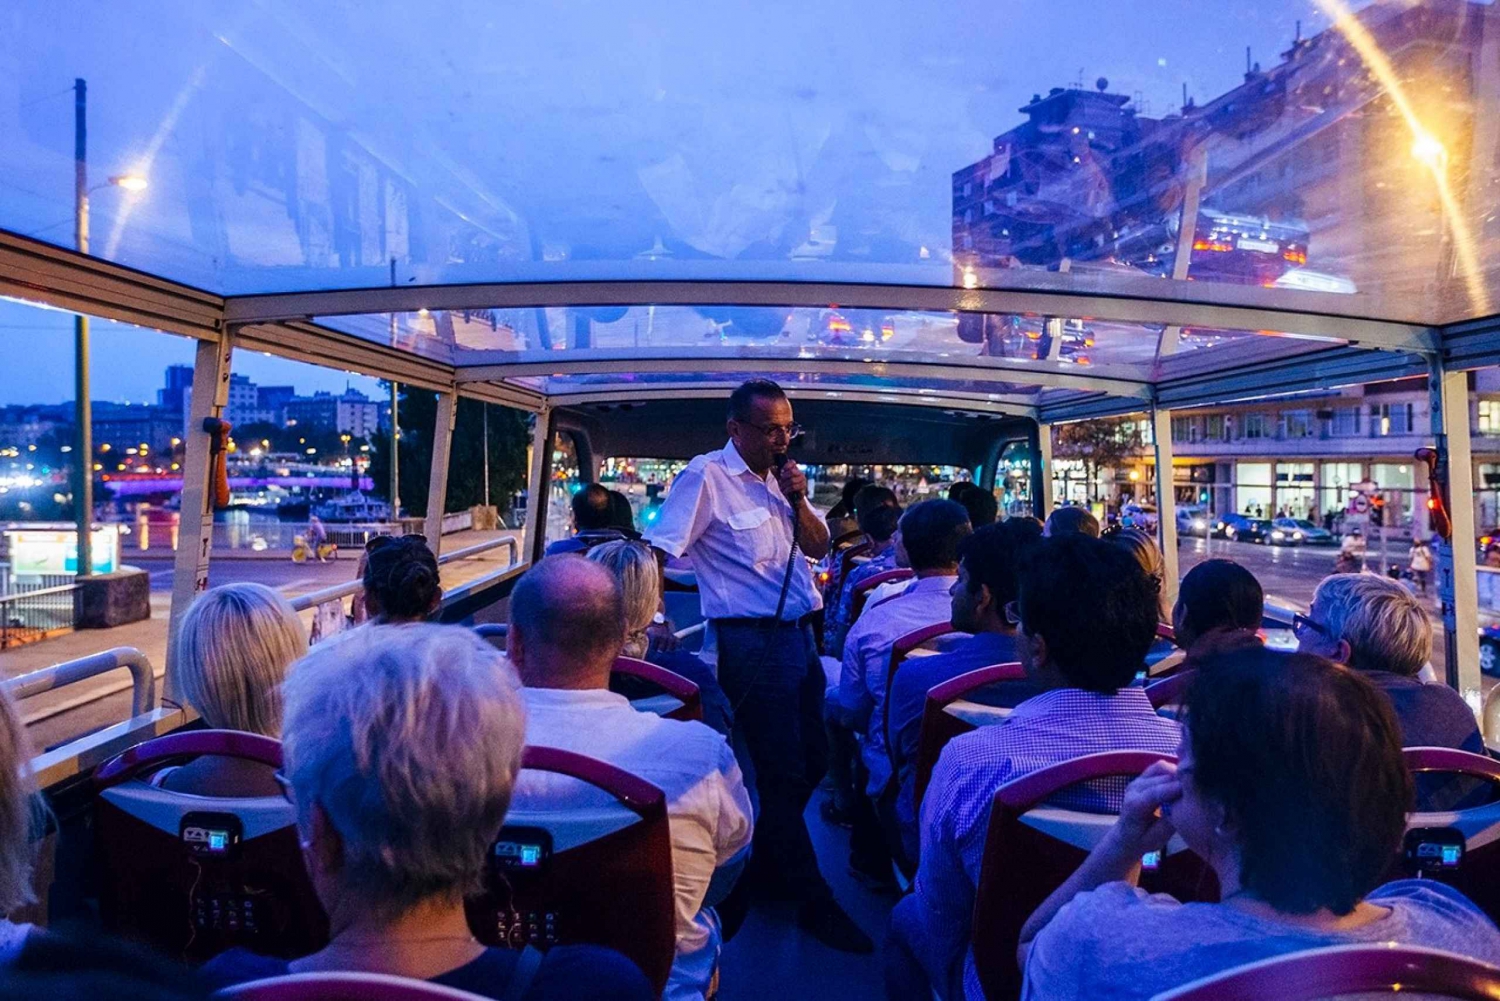 Vienna: tour notturno dei momenti salienti della città di Big Bus con guida dal vivo